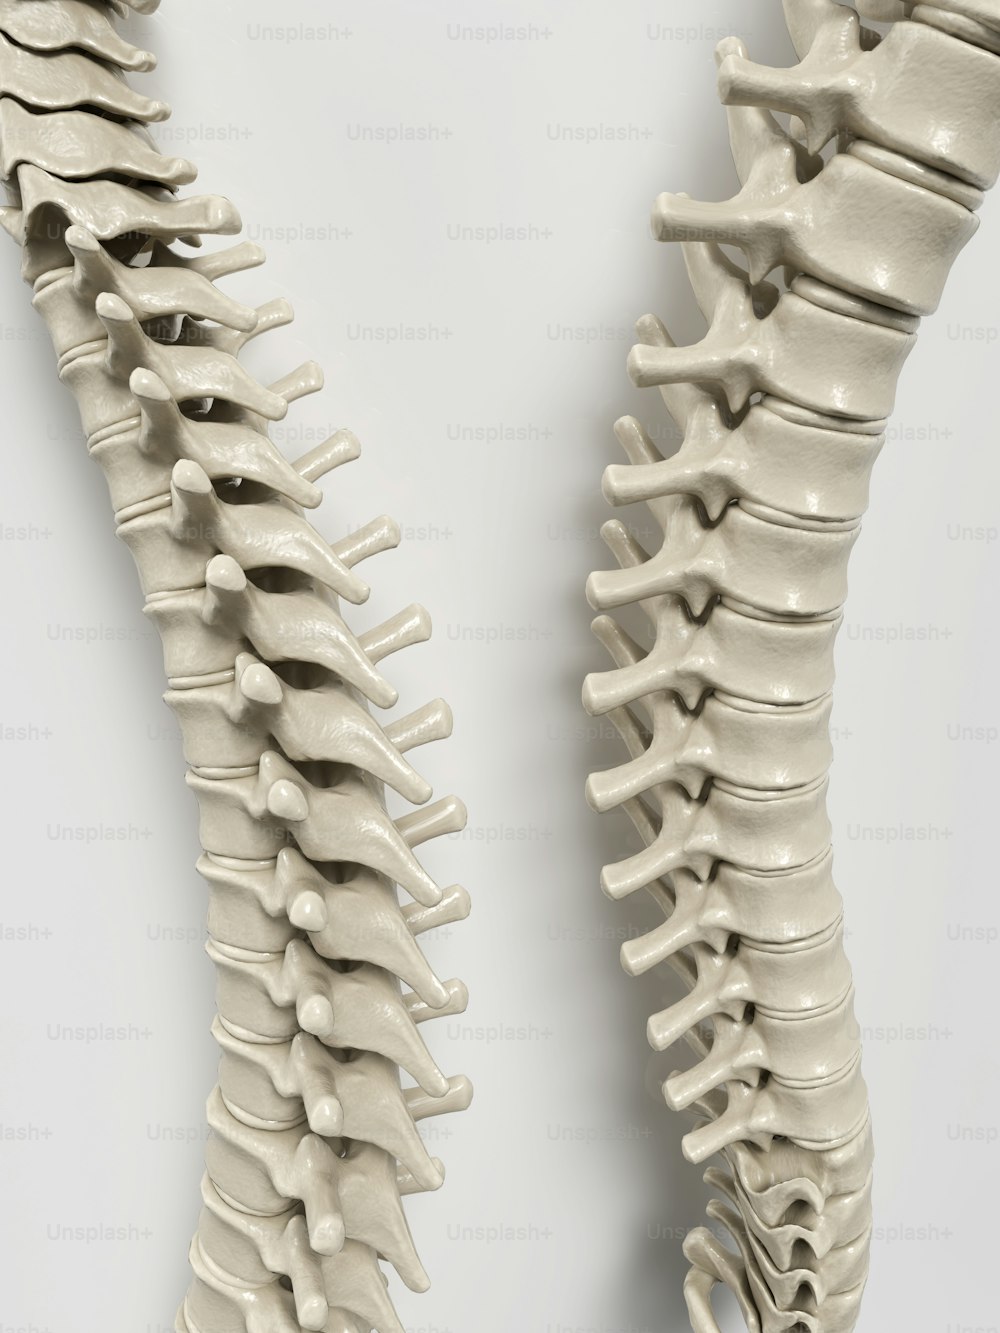 um modelo da parte de trás de um esqueleto humano